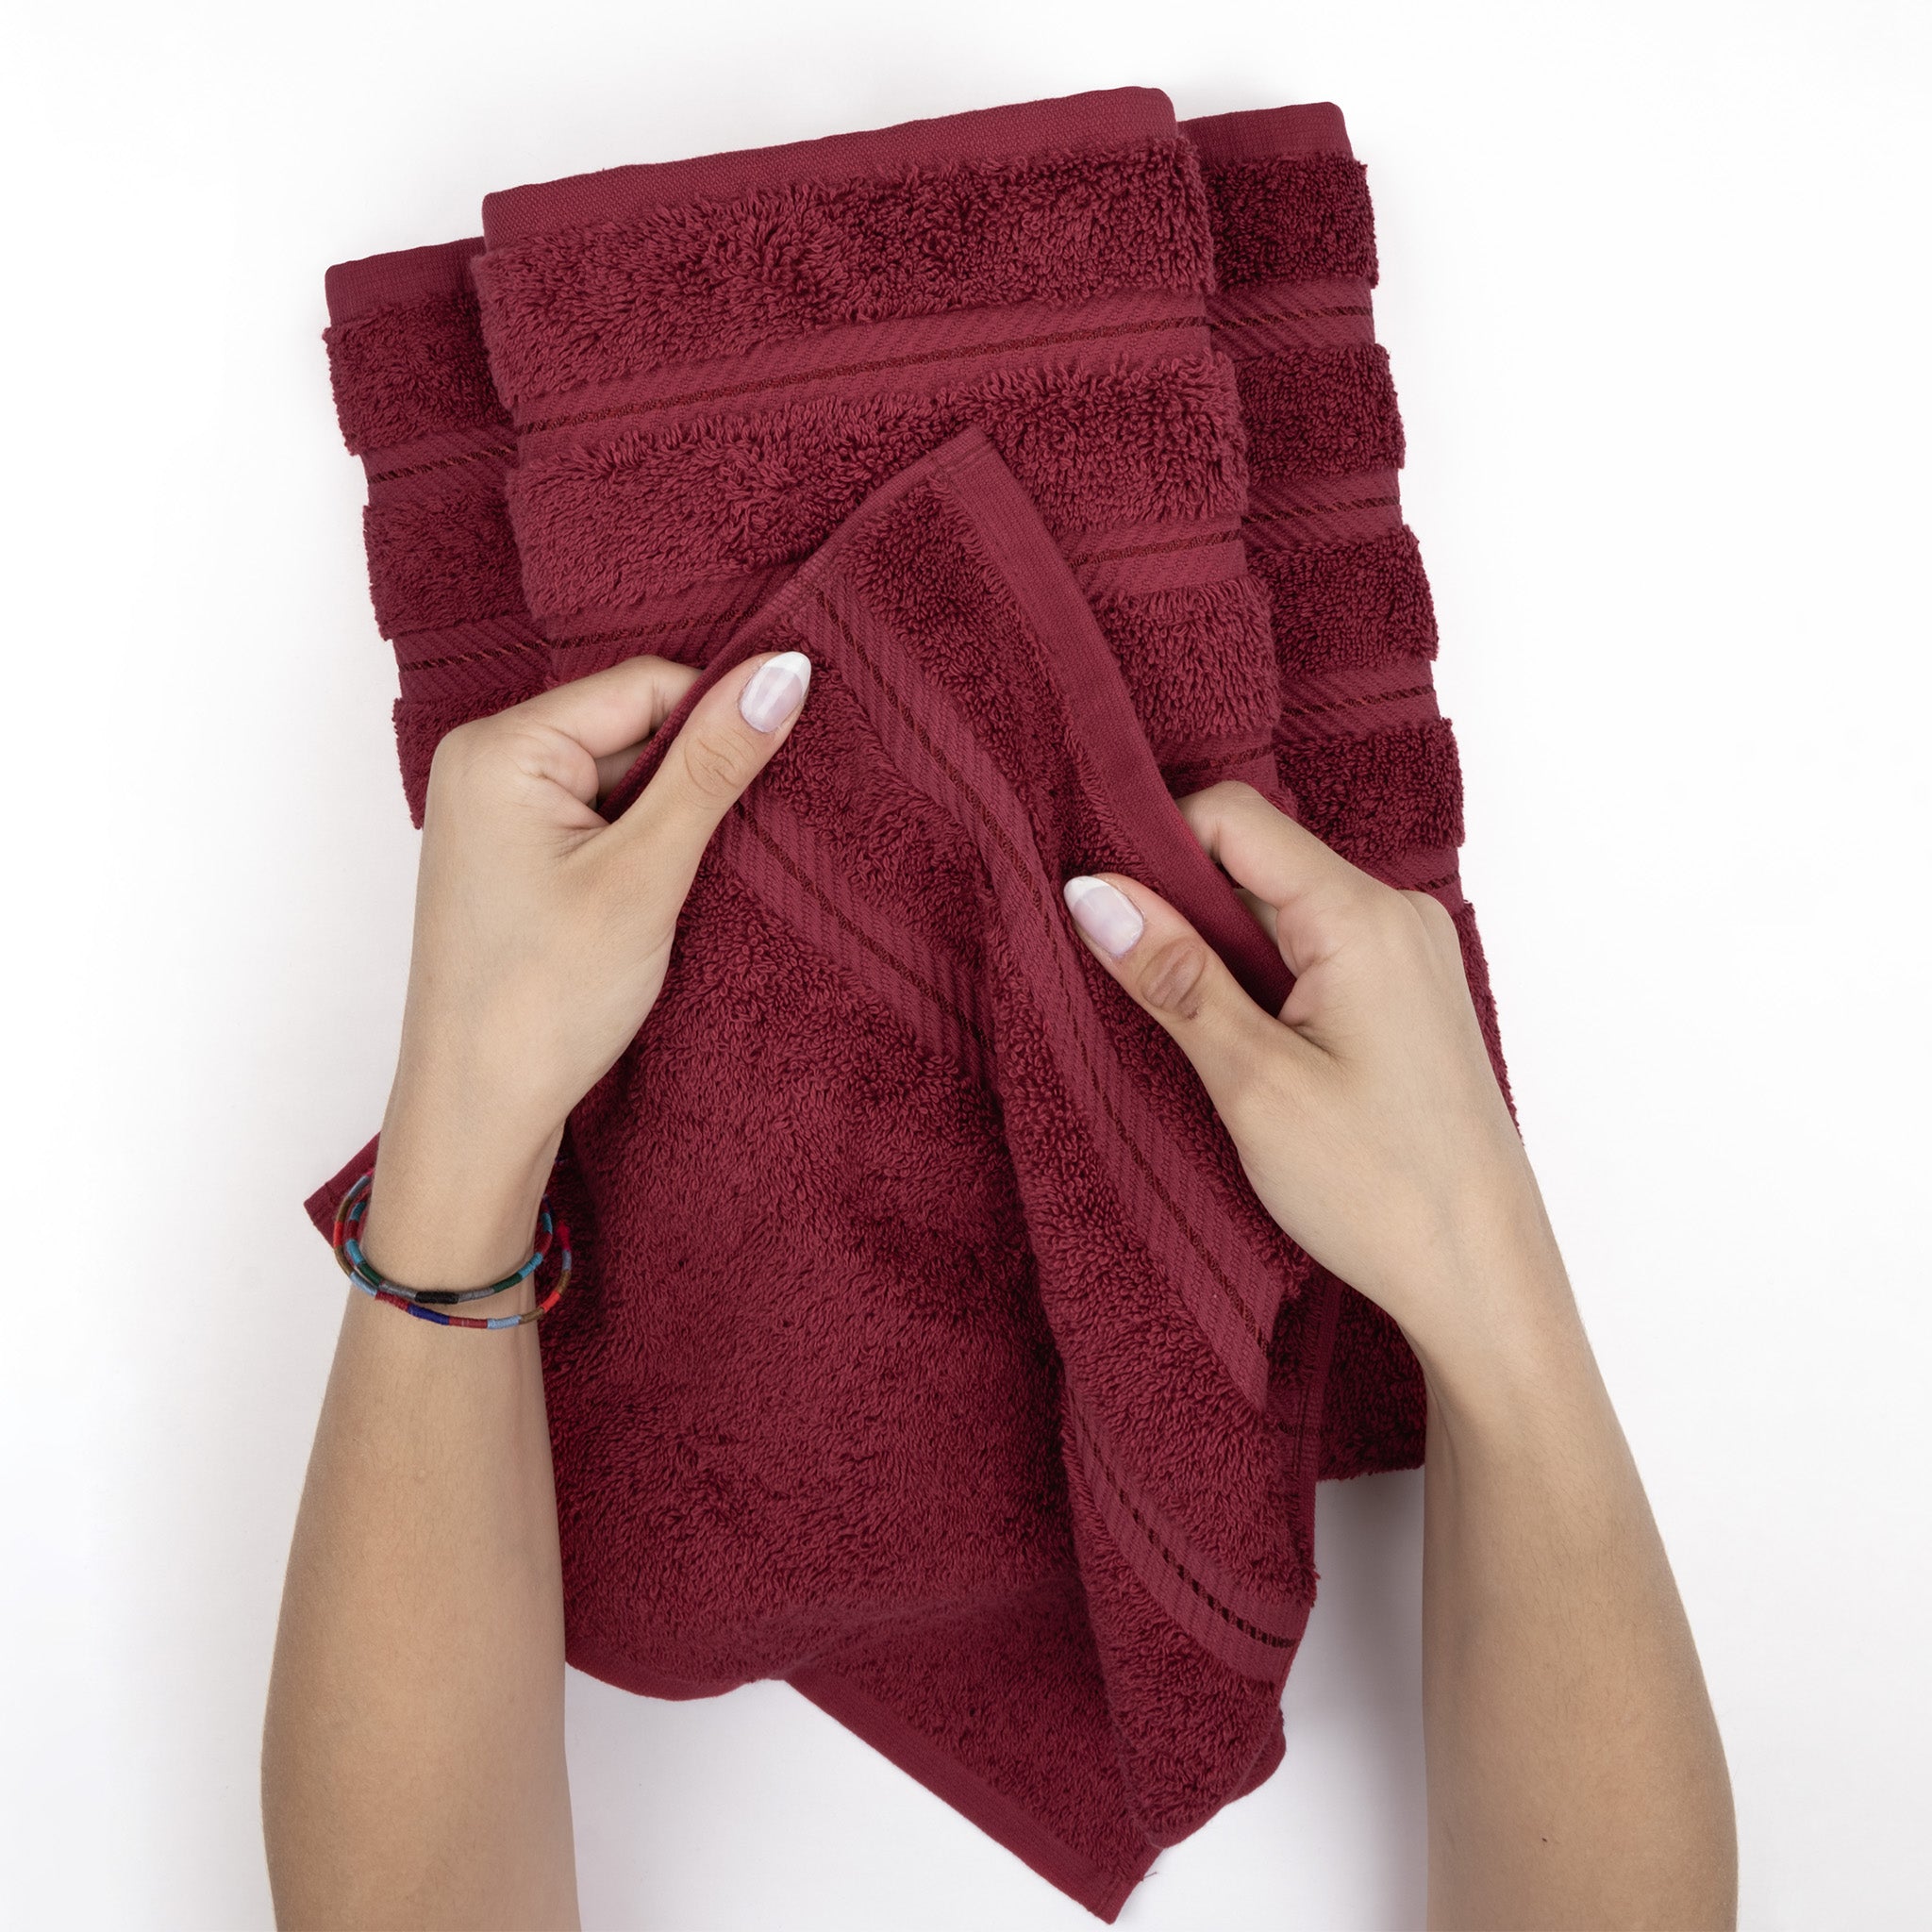 American Soft Linen 100% Turkish Cotton 4 Pack Bath Towel Set Wholesale bordeaux-red-5